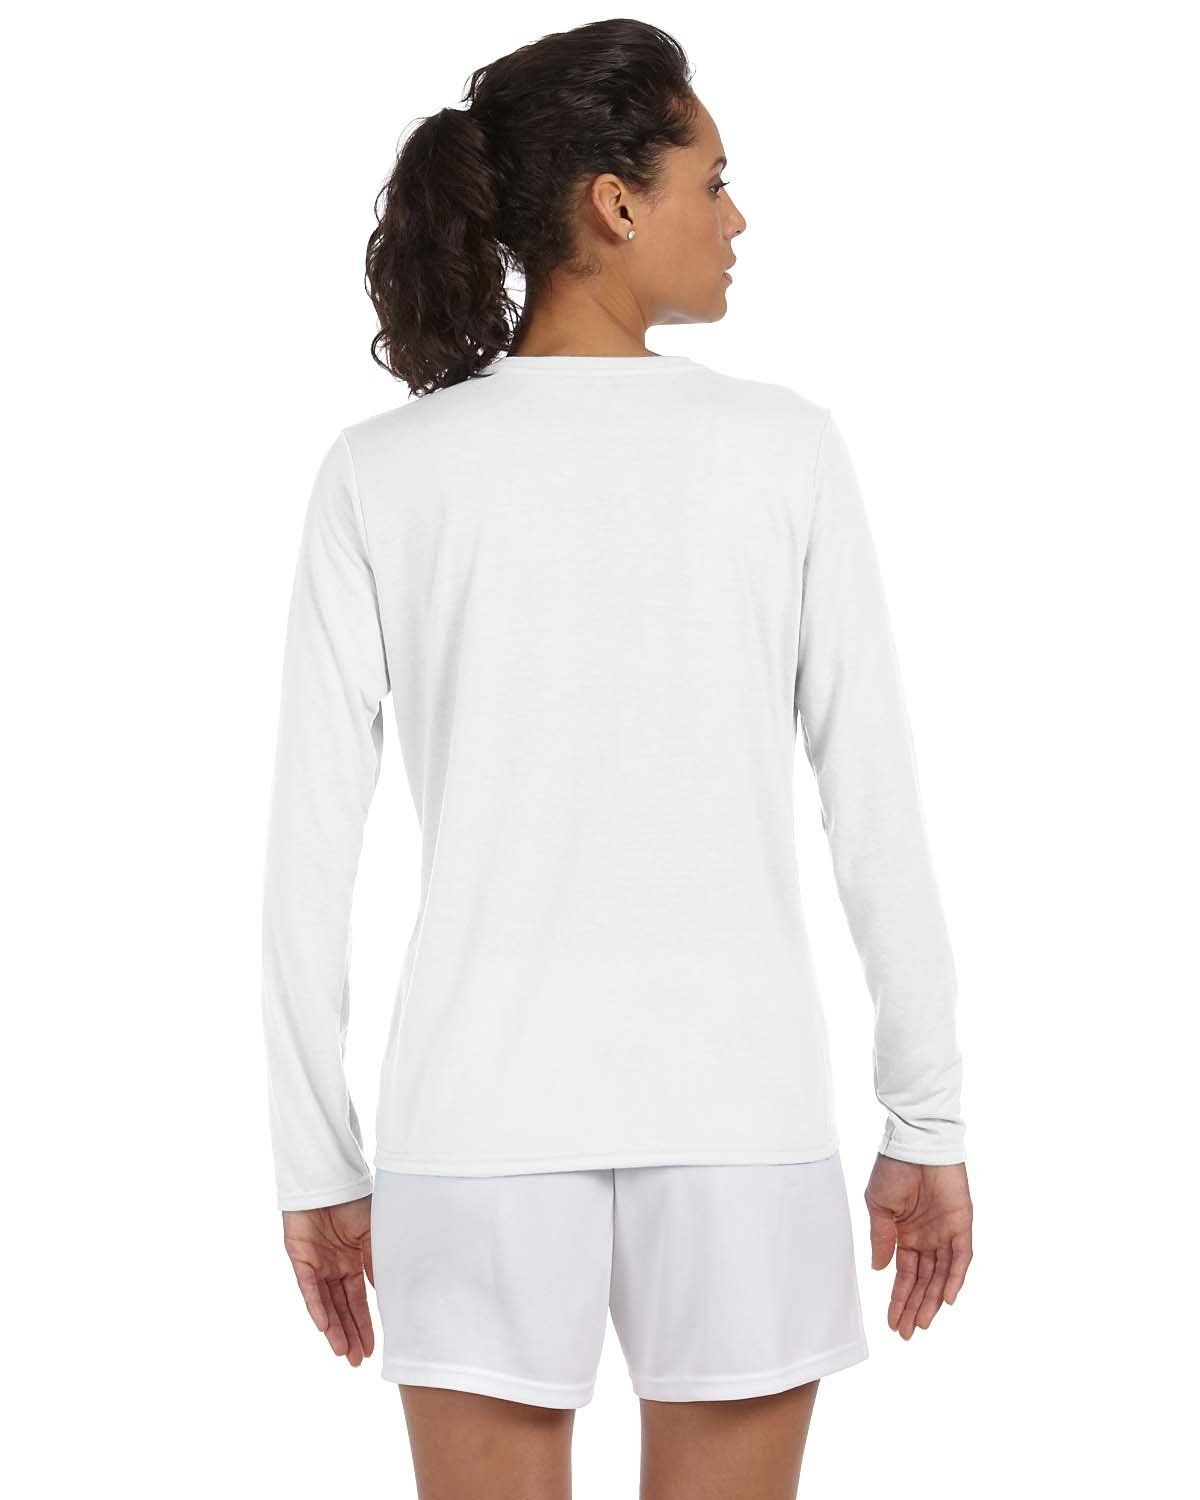 'Gildan G424L Women's Performance Long Sleeve T Shirt'